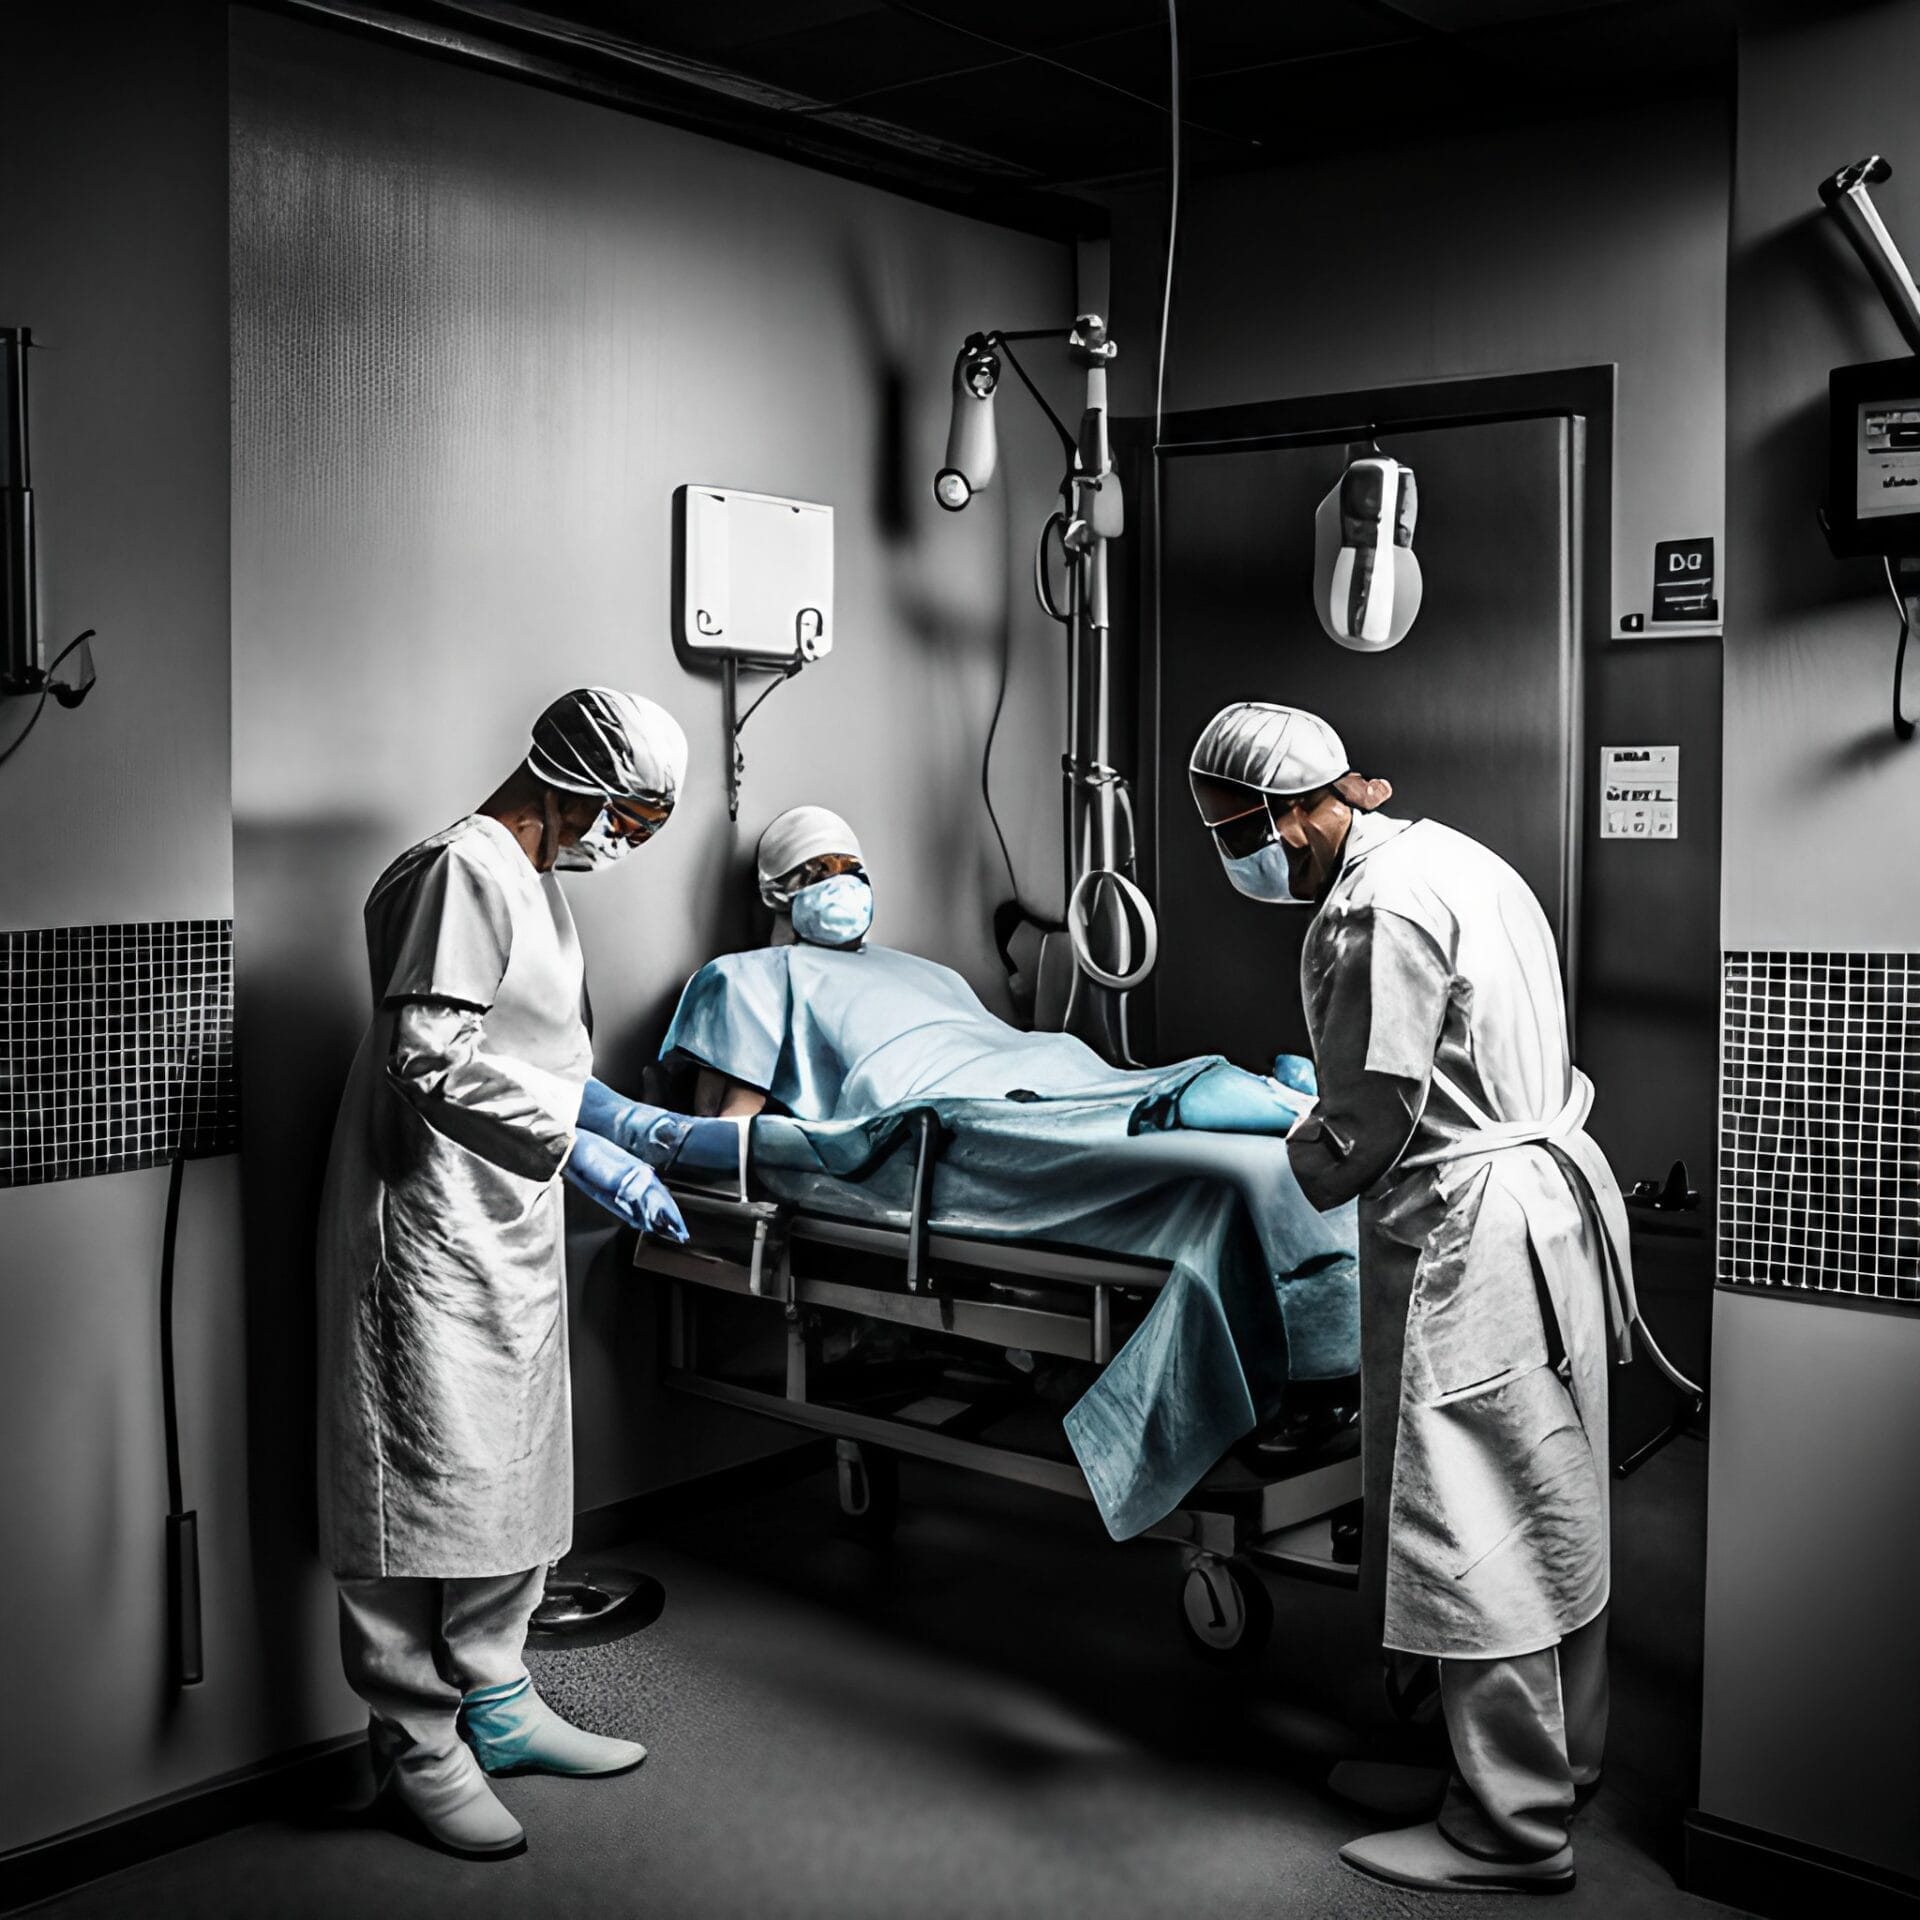 Paolo Macchiarini: The Controversial Surgeon